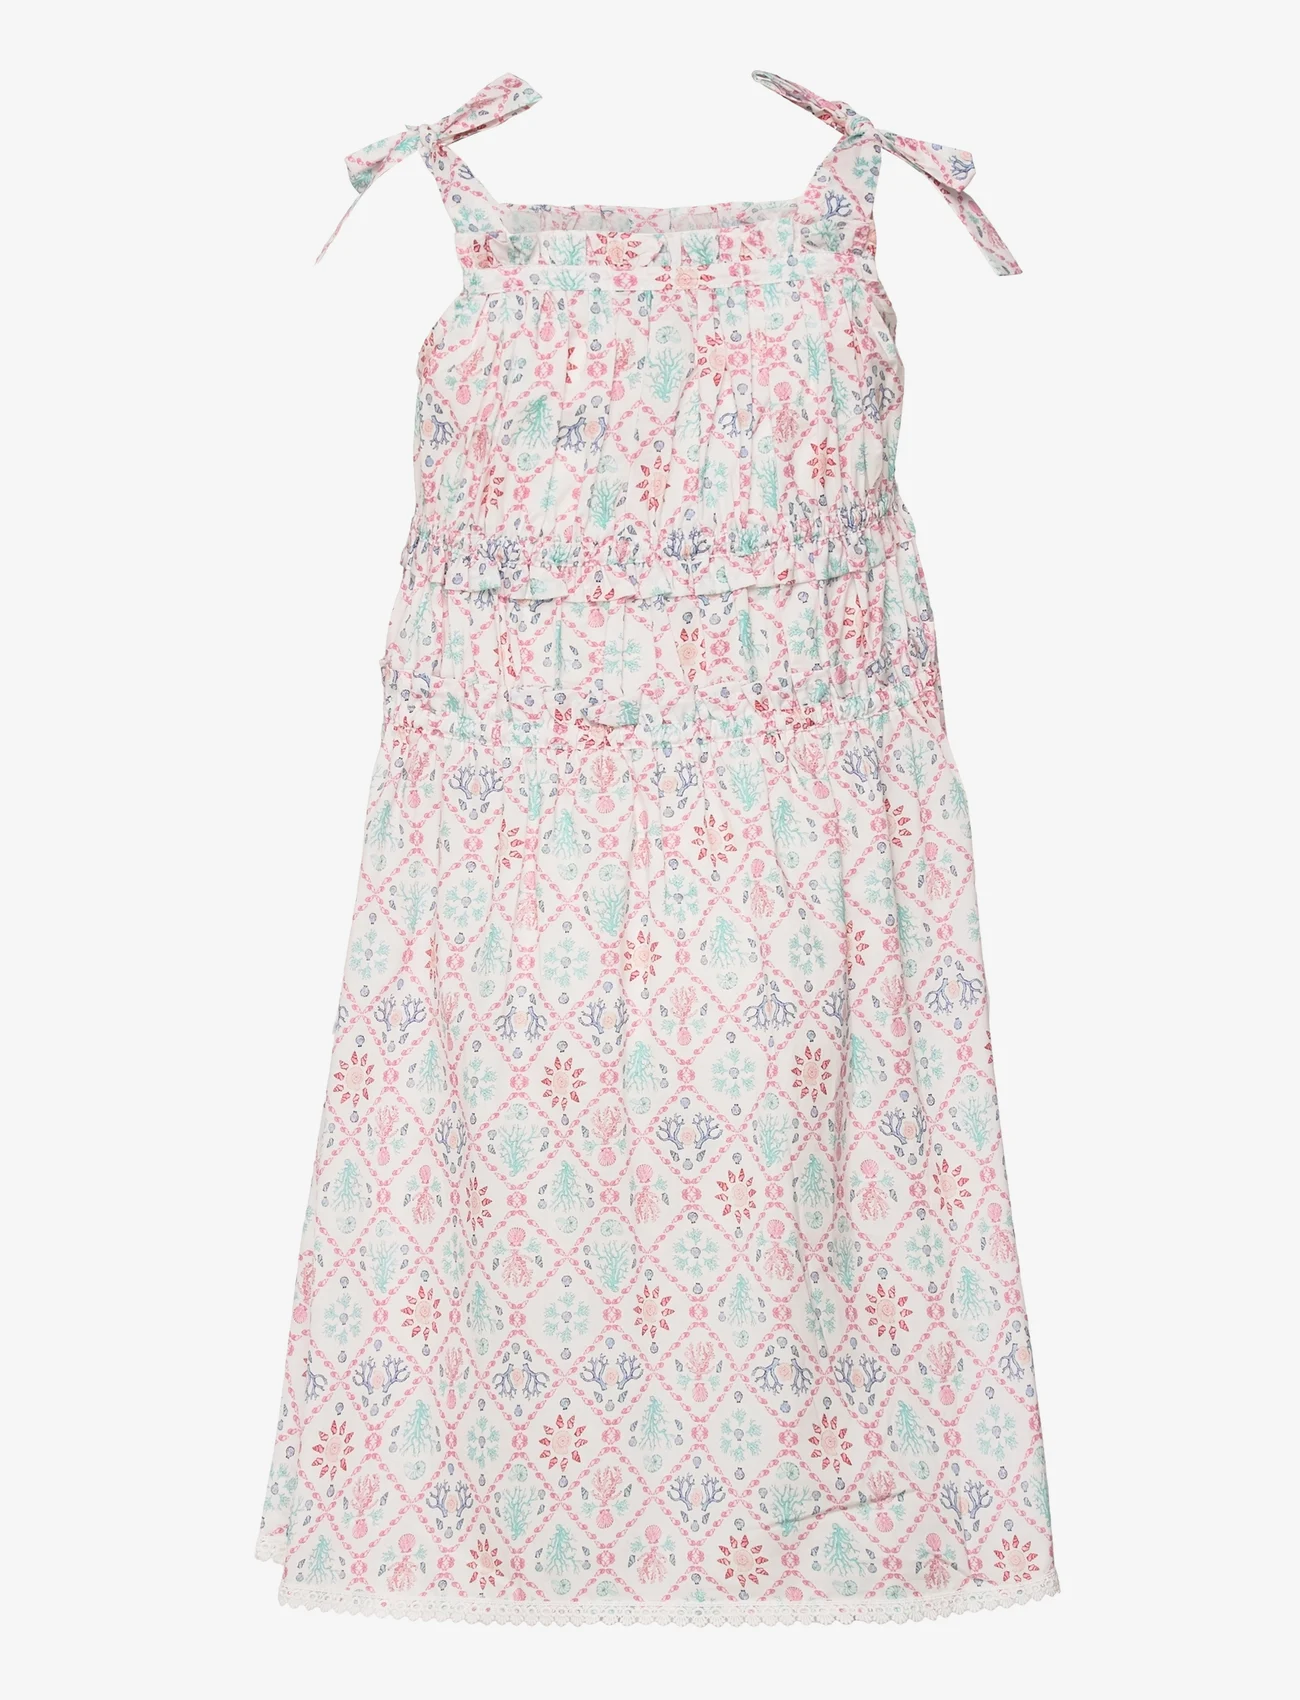 Malina - Mini Amara dress - sukienki codzienne bez rękawów - capri corals blush - 1